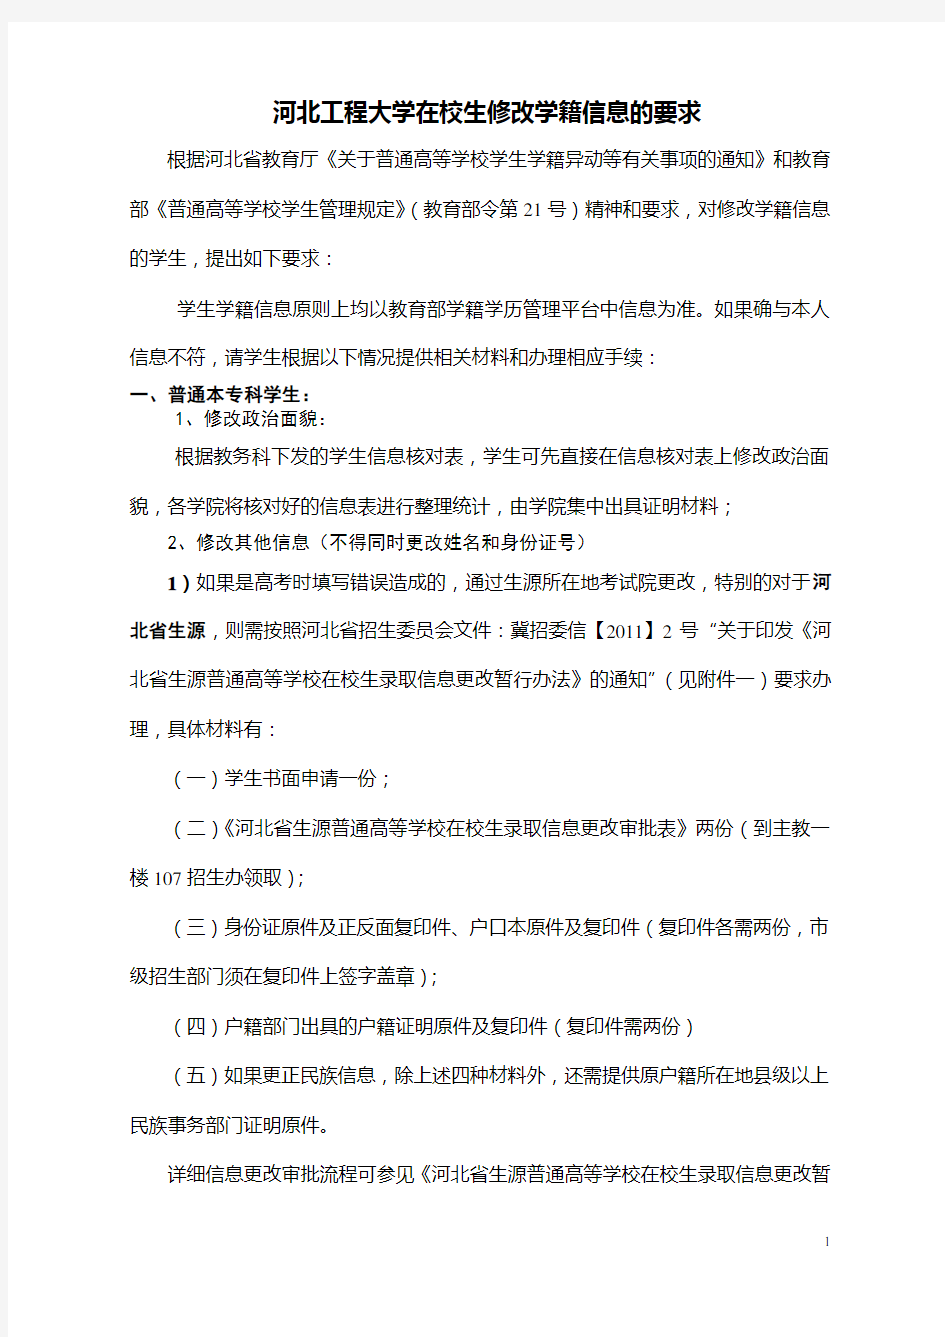 河北省高校在校生修改学籍信息的要求